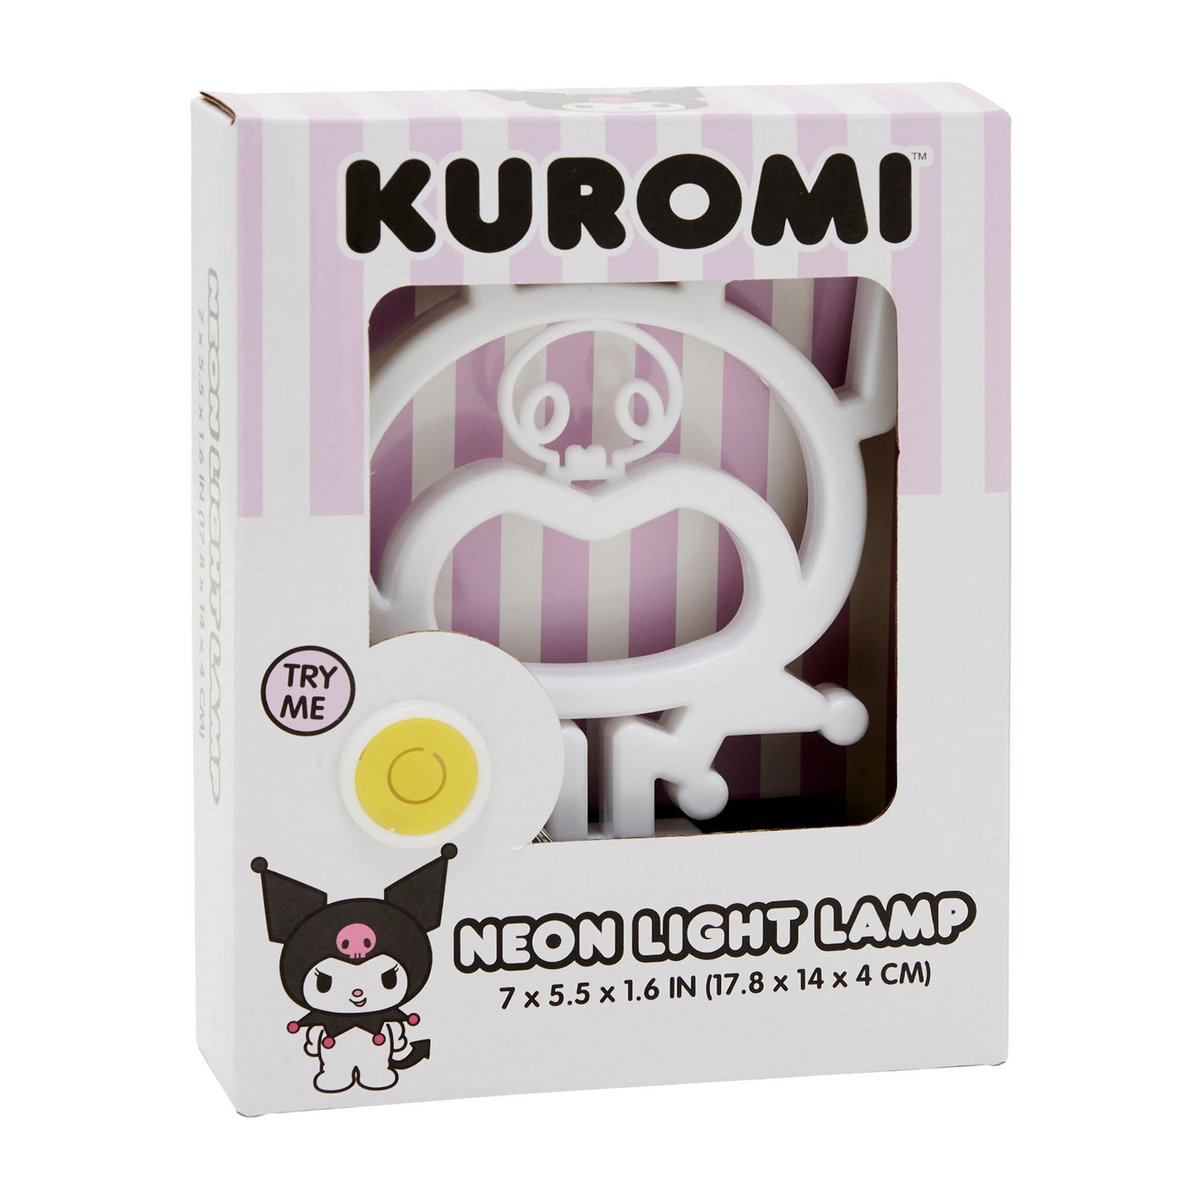 Kuromi Silhouette Neon Light Lamp Home Goods Silver Buffalo LLC   